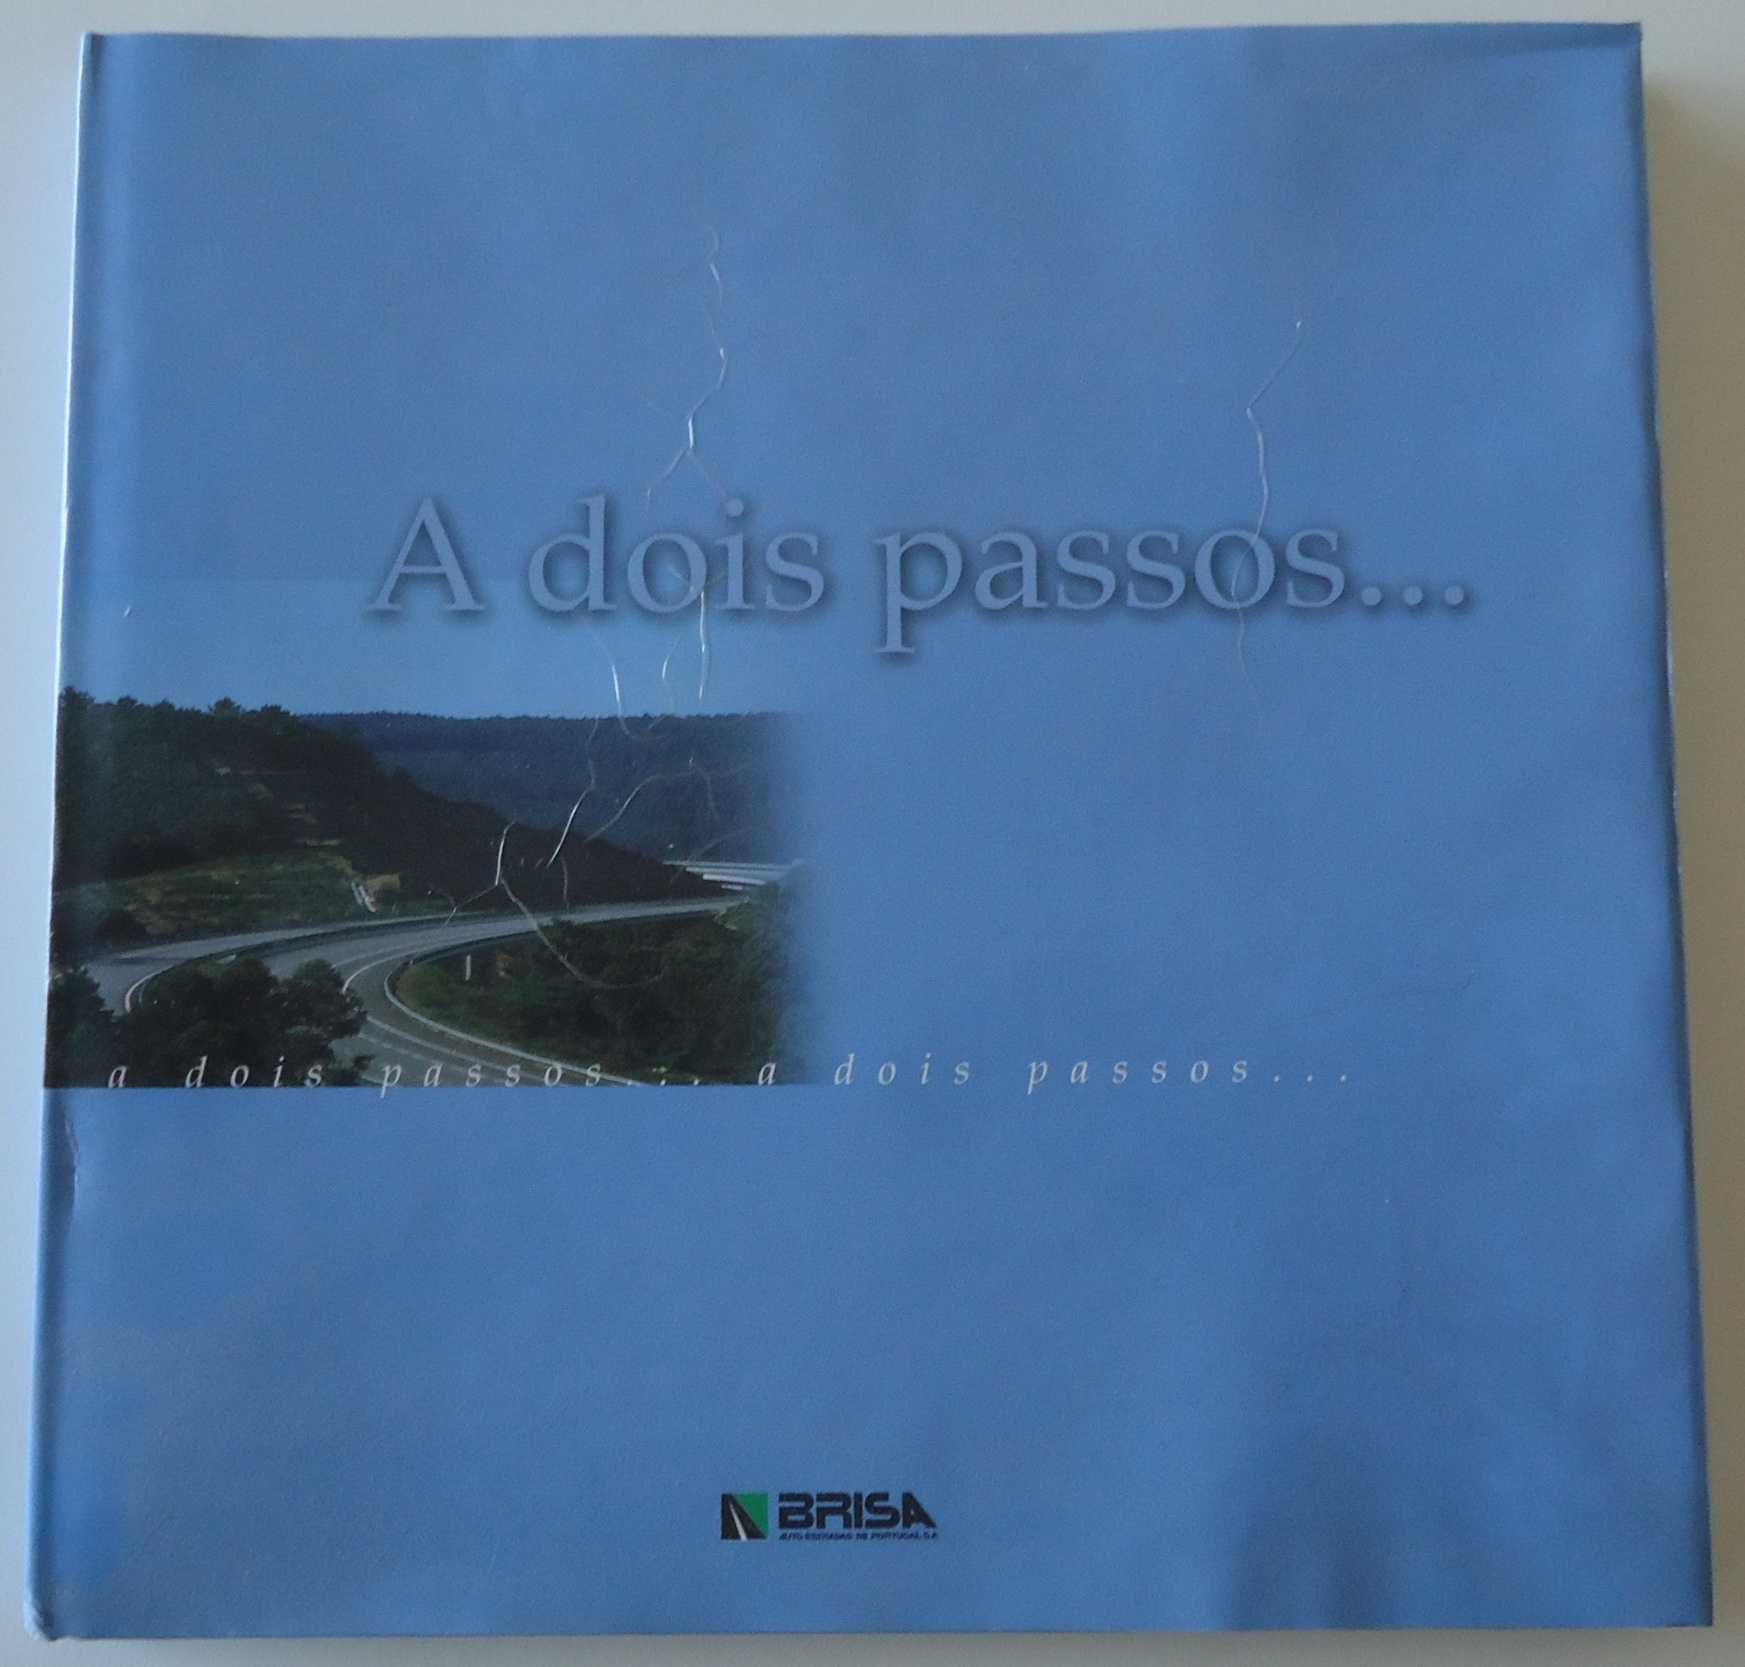 Livro "A dois passos..." sobre Portugal - Edição exclusiva da Brisa